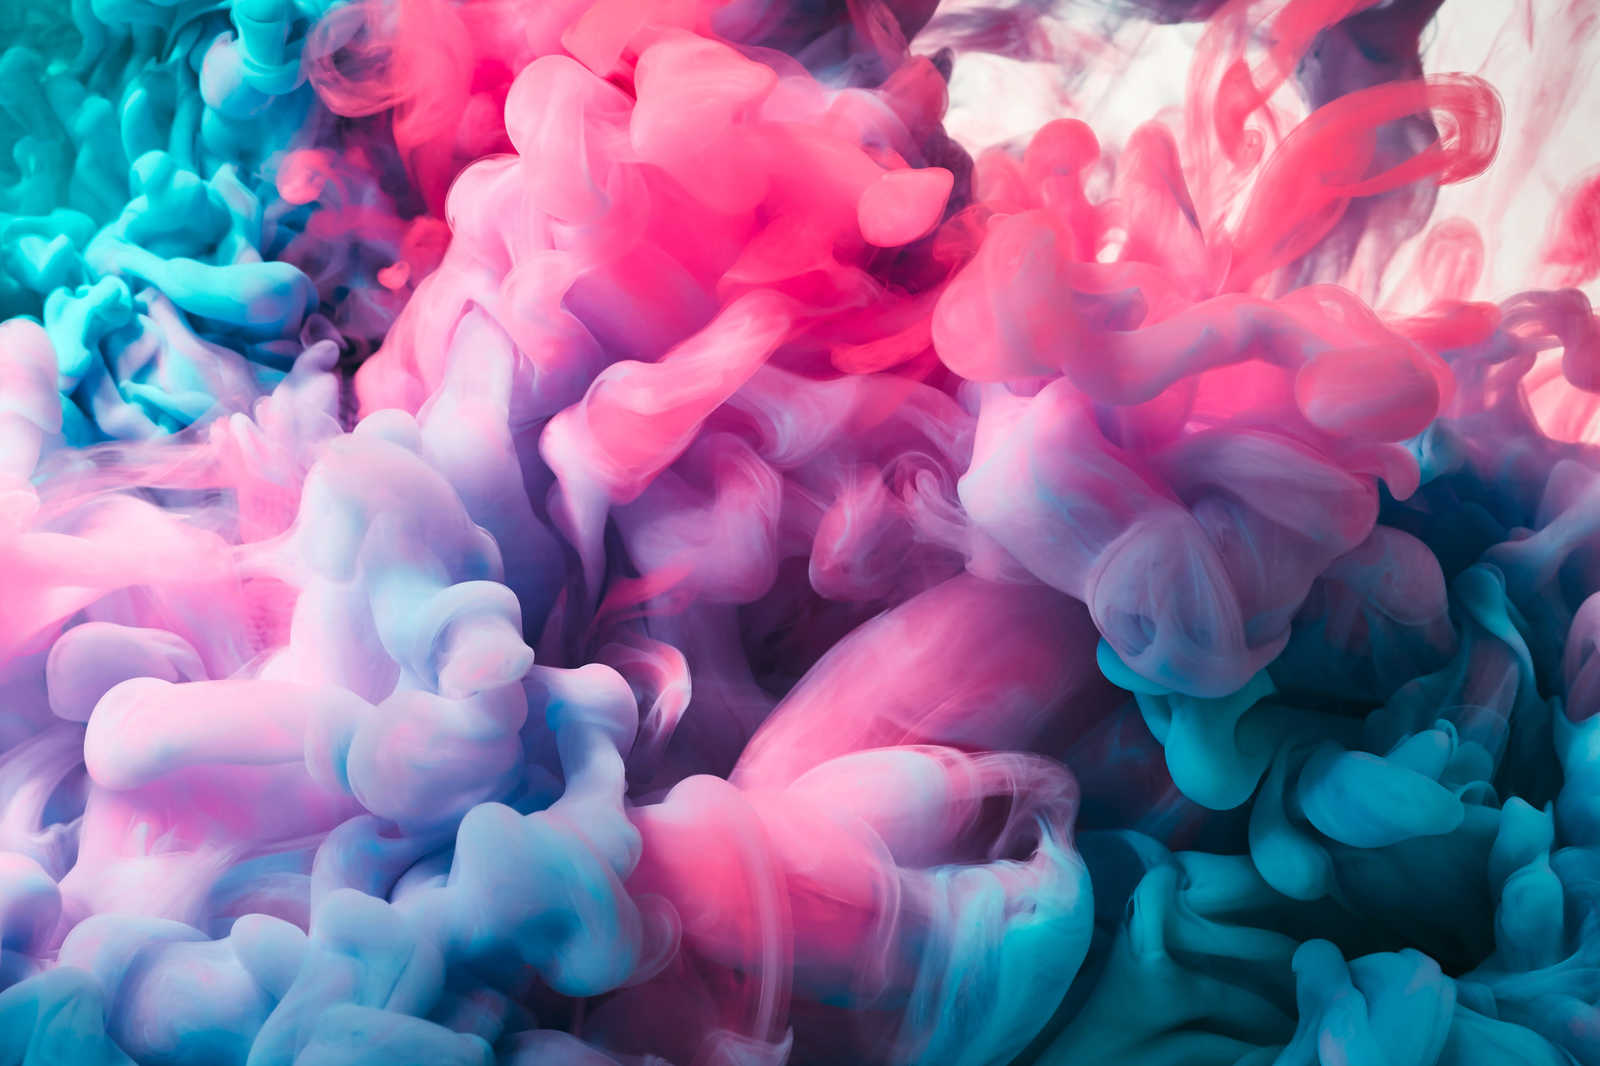             Gekleurd Rook Canvas |Roze, Blauw, Wit - 0.90 m x 0.60 m
        